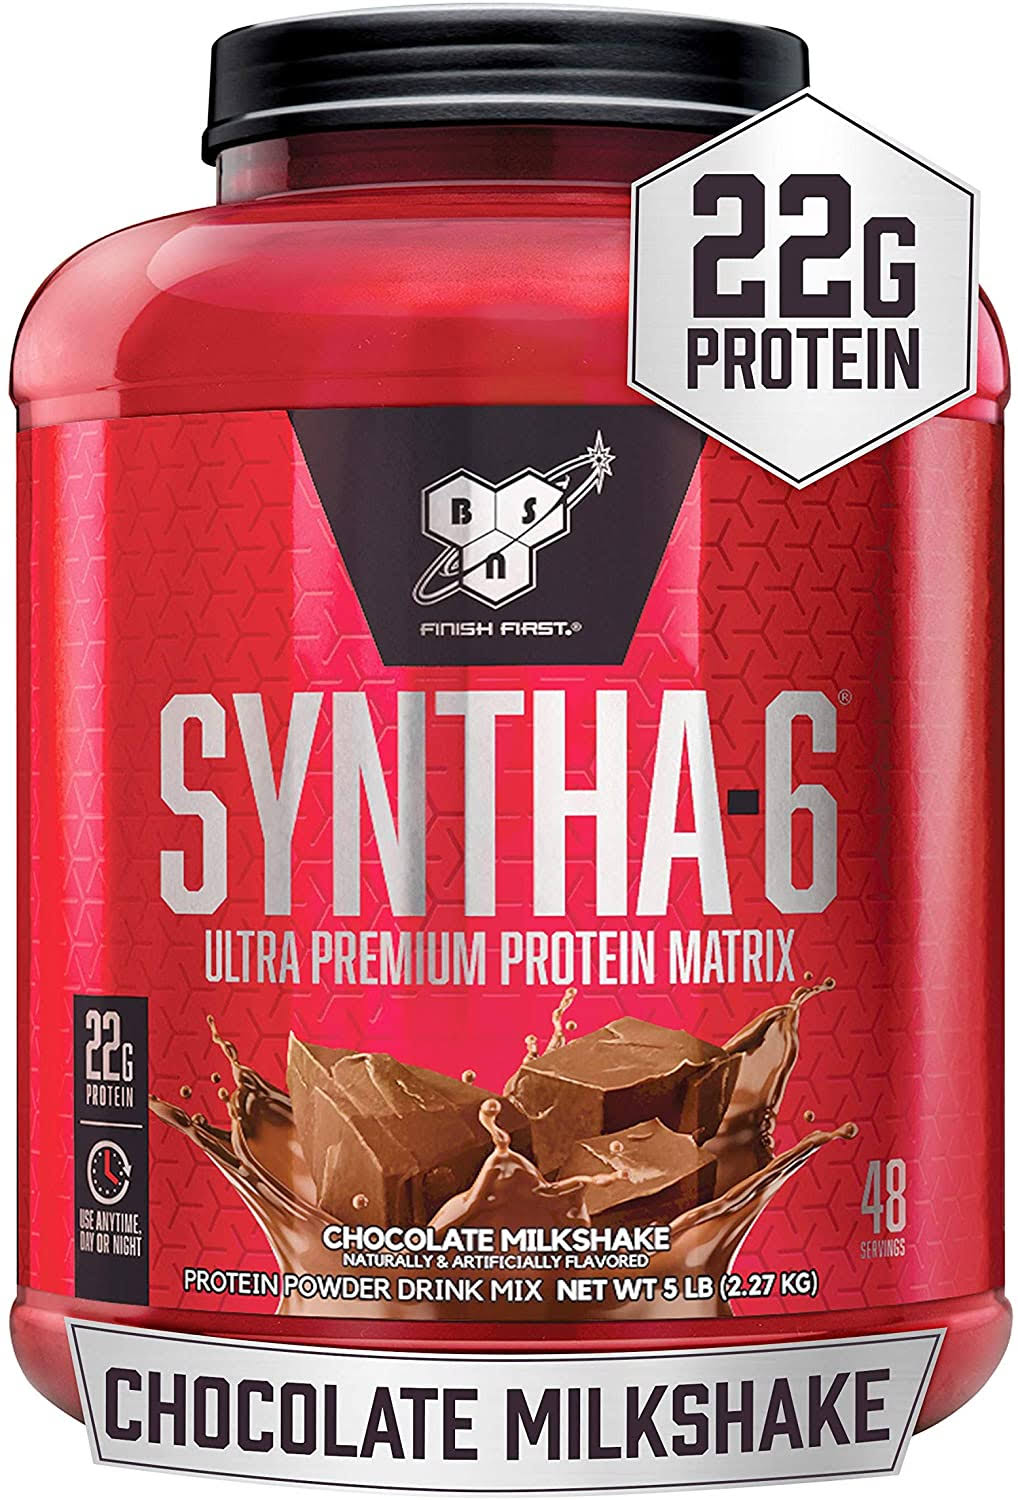 BSN Syntha6 Protein Powder Sports Supplement Drink Mix - Chocolate Milkshake, 5lbs